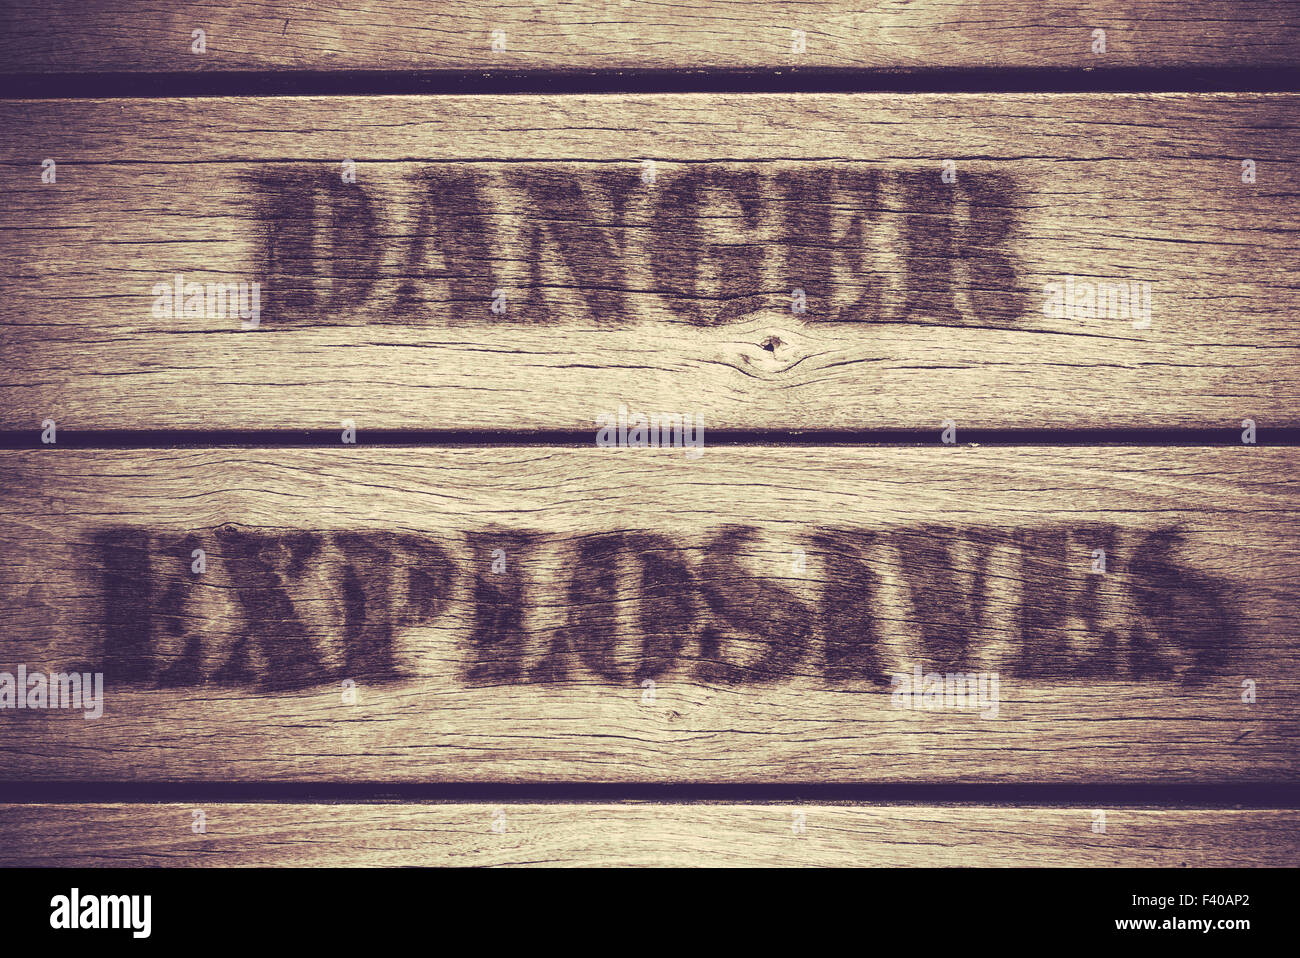 Danger Explosives Stock Photo